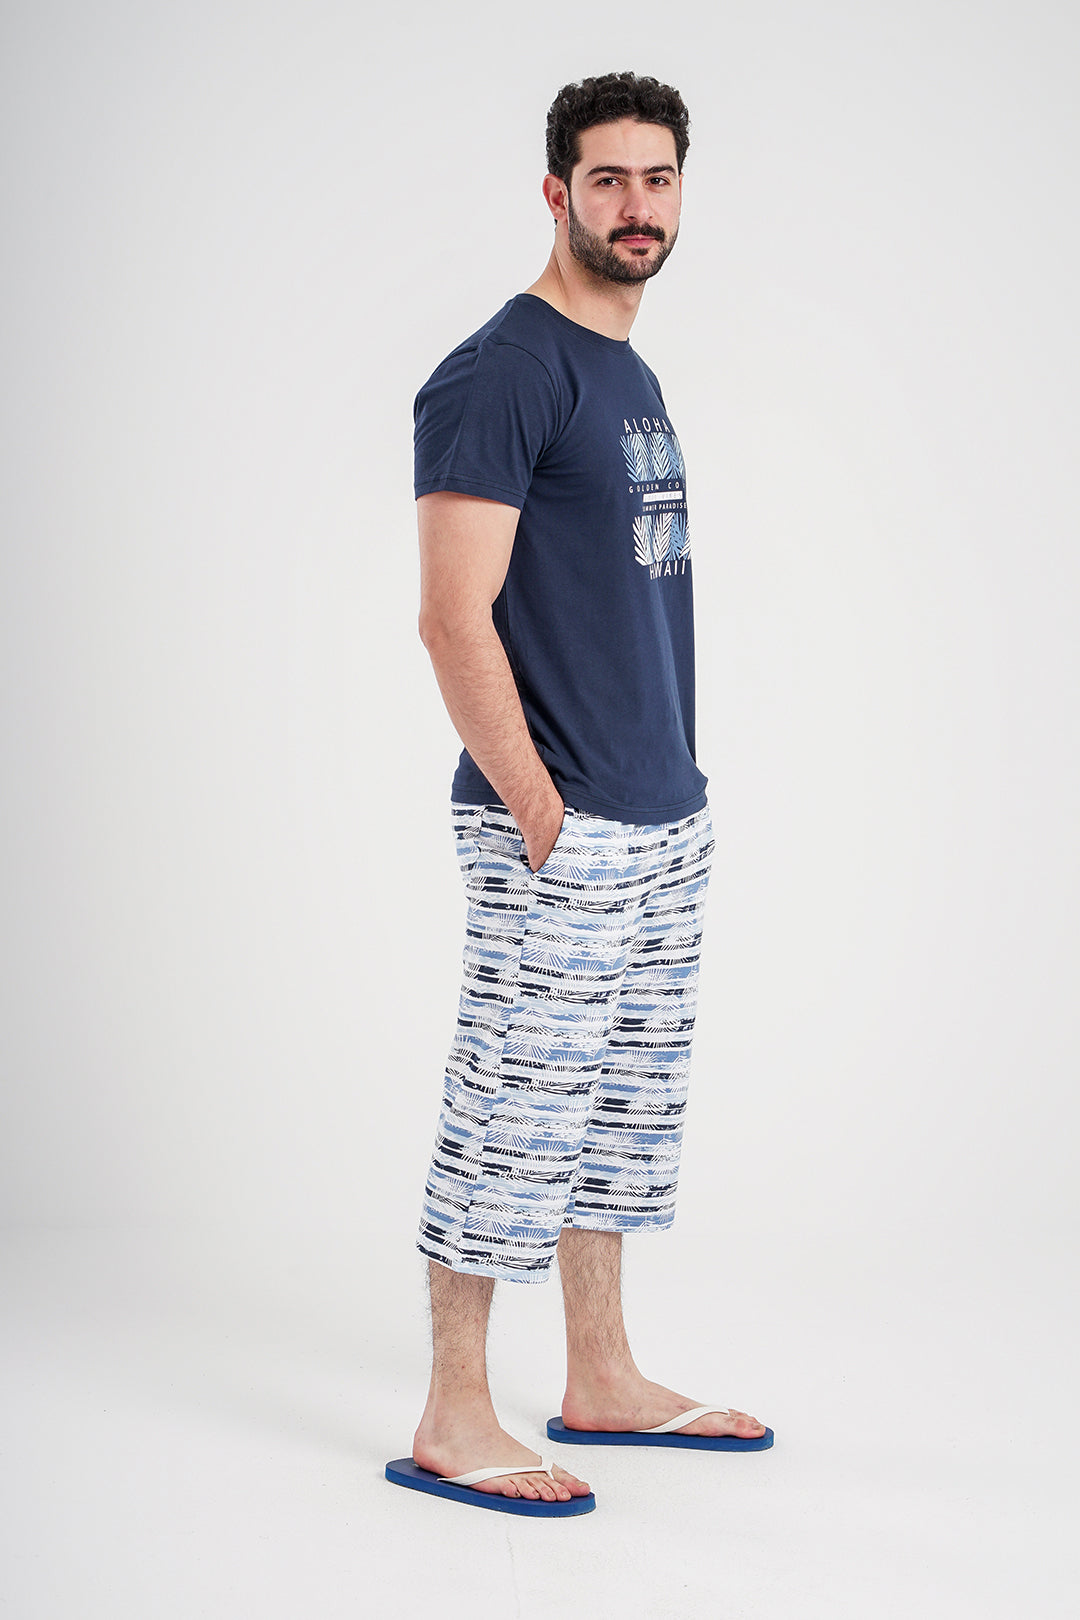 Aloha Hawaii Men's Pajama Shorts Printed